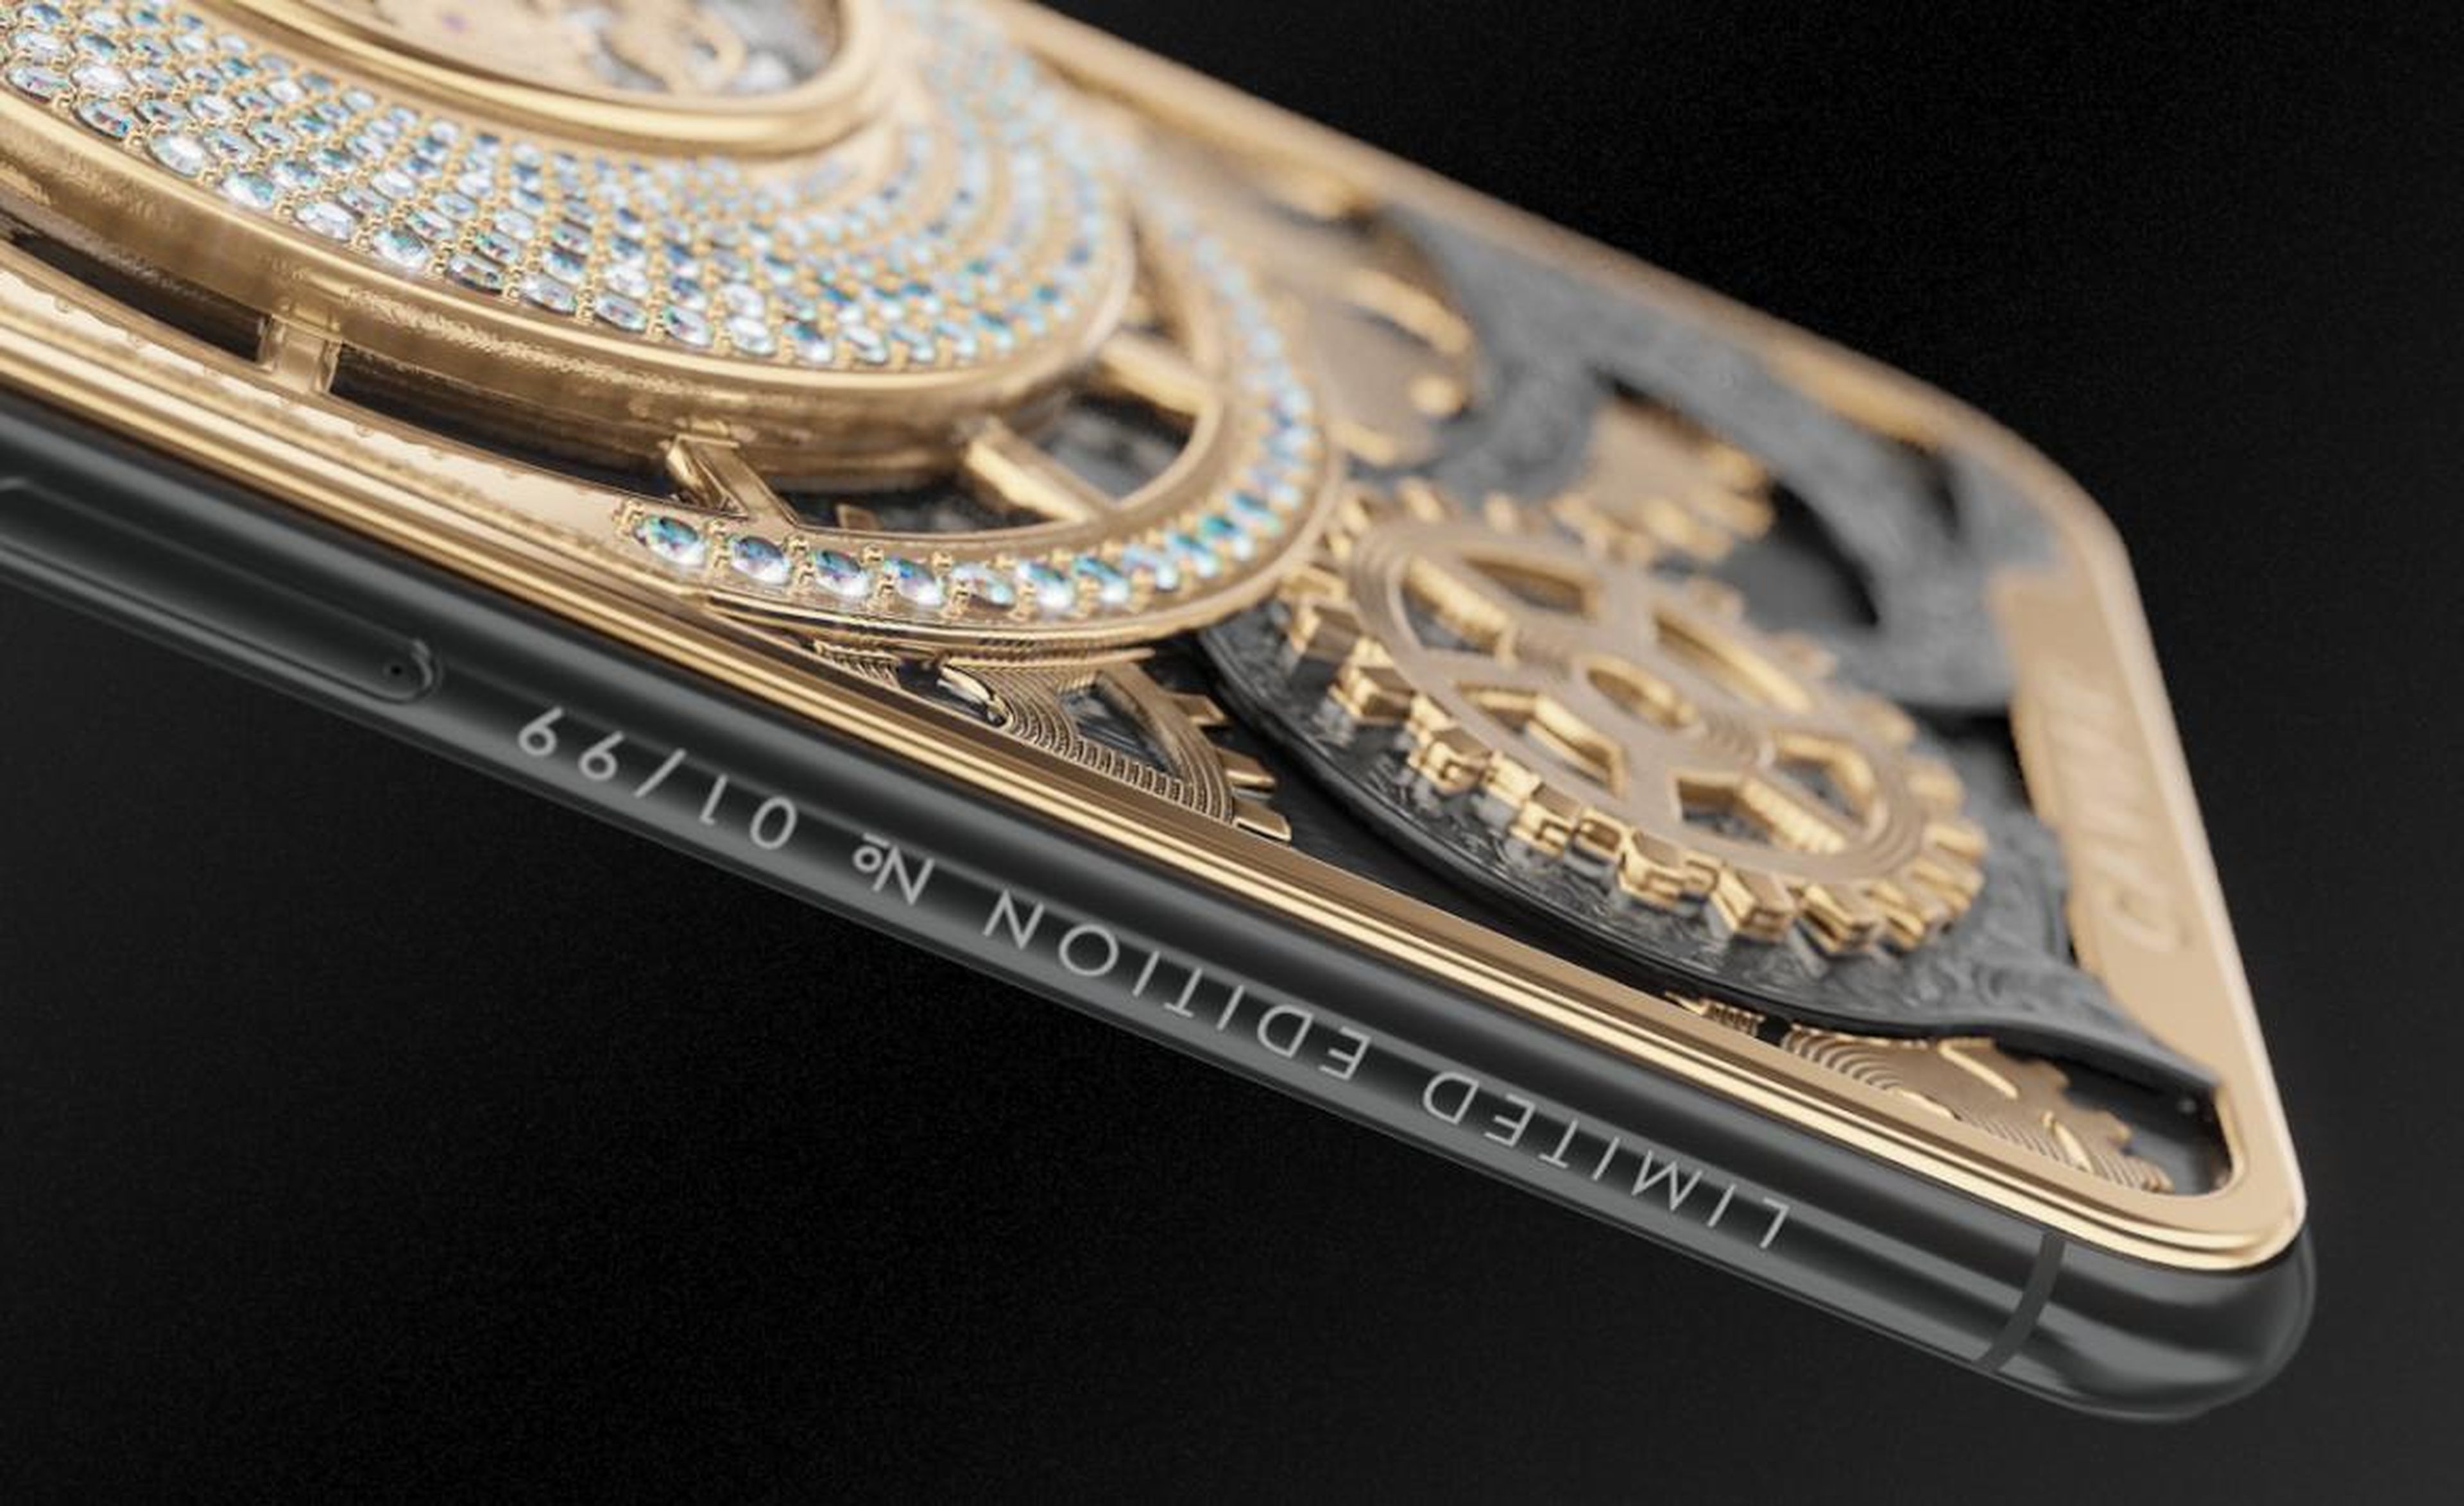 Además, en el lateral hay una inscripción que detalla cuál de los 99 iPhone de Caviar tienes